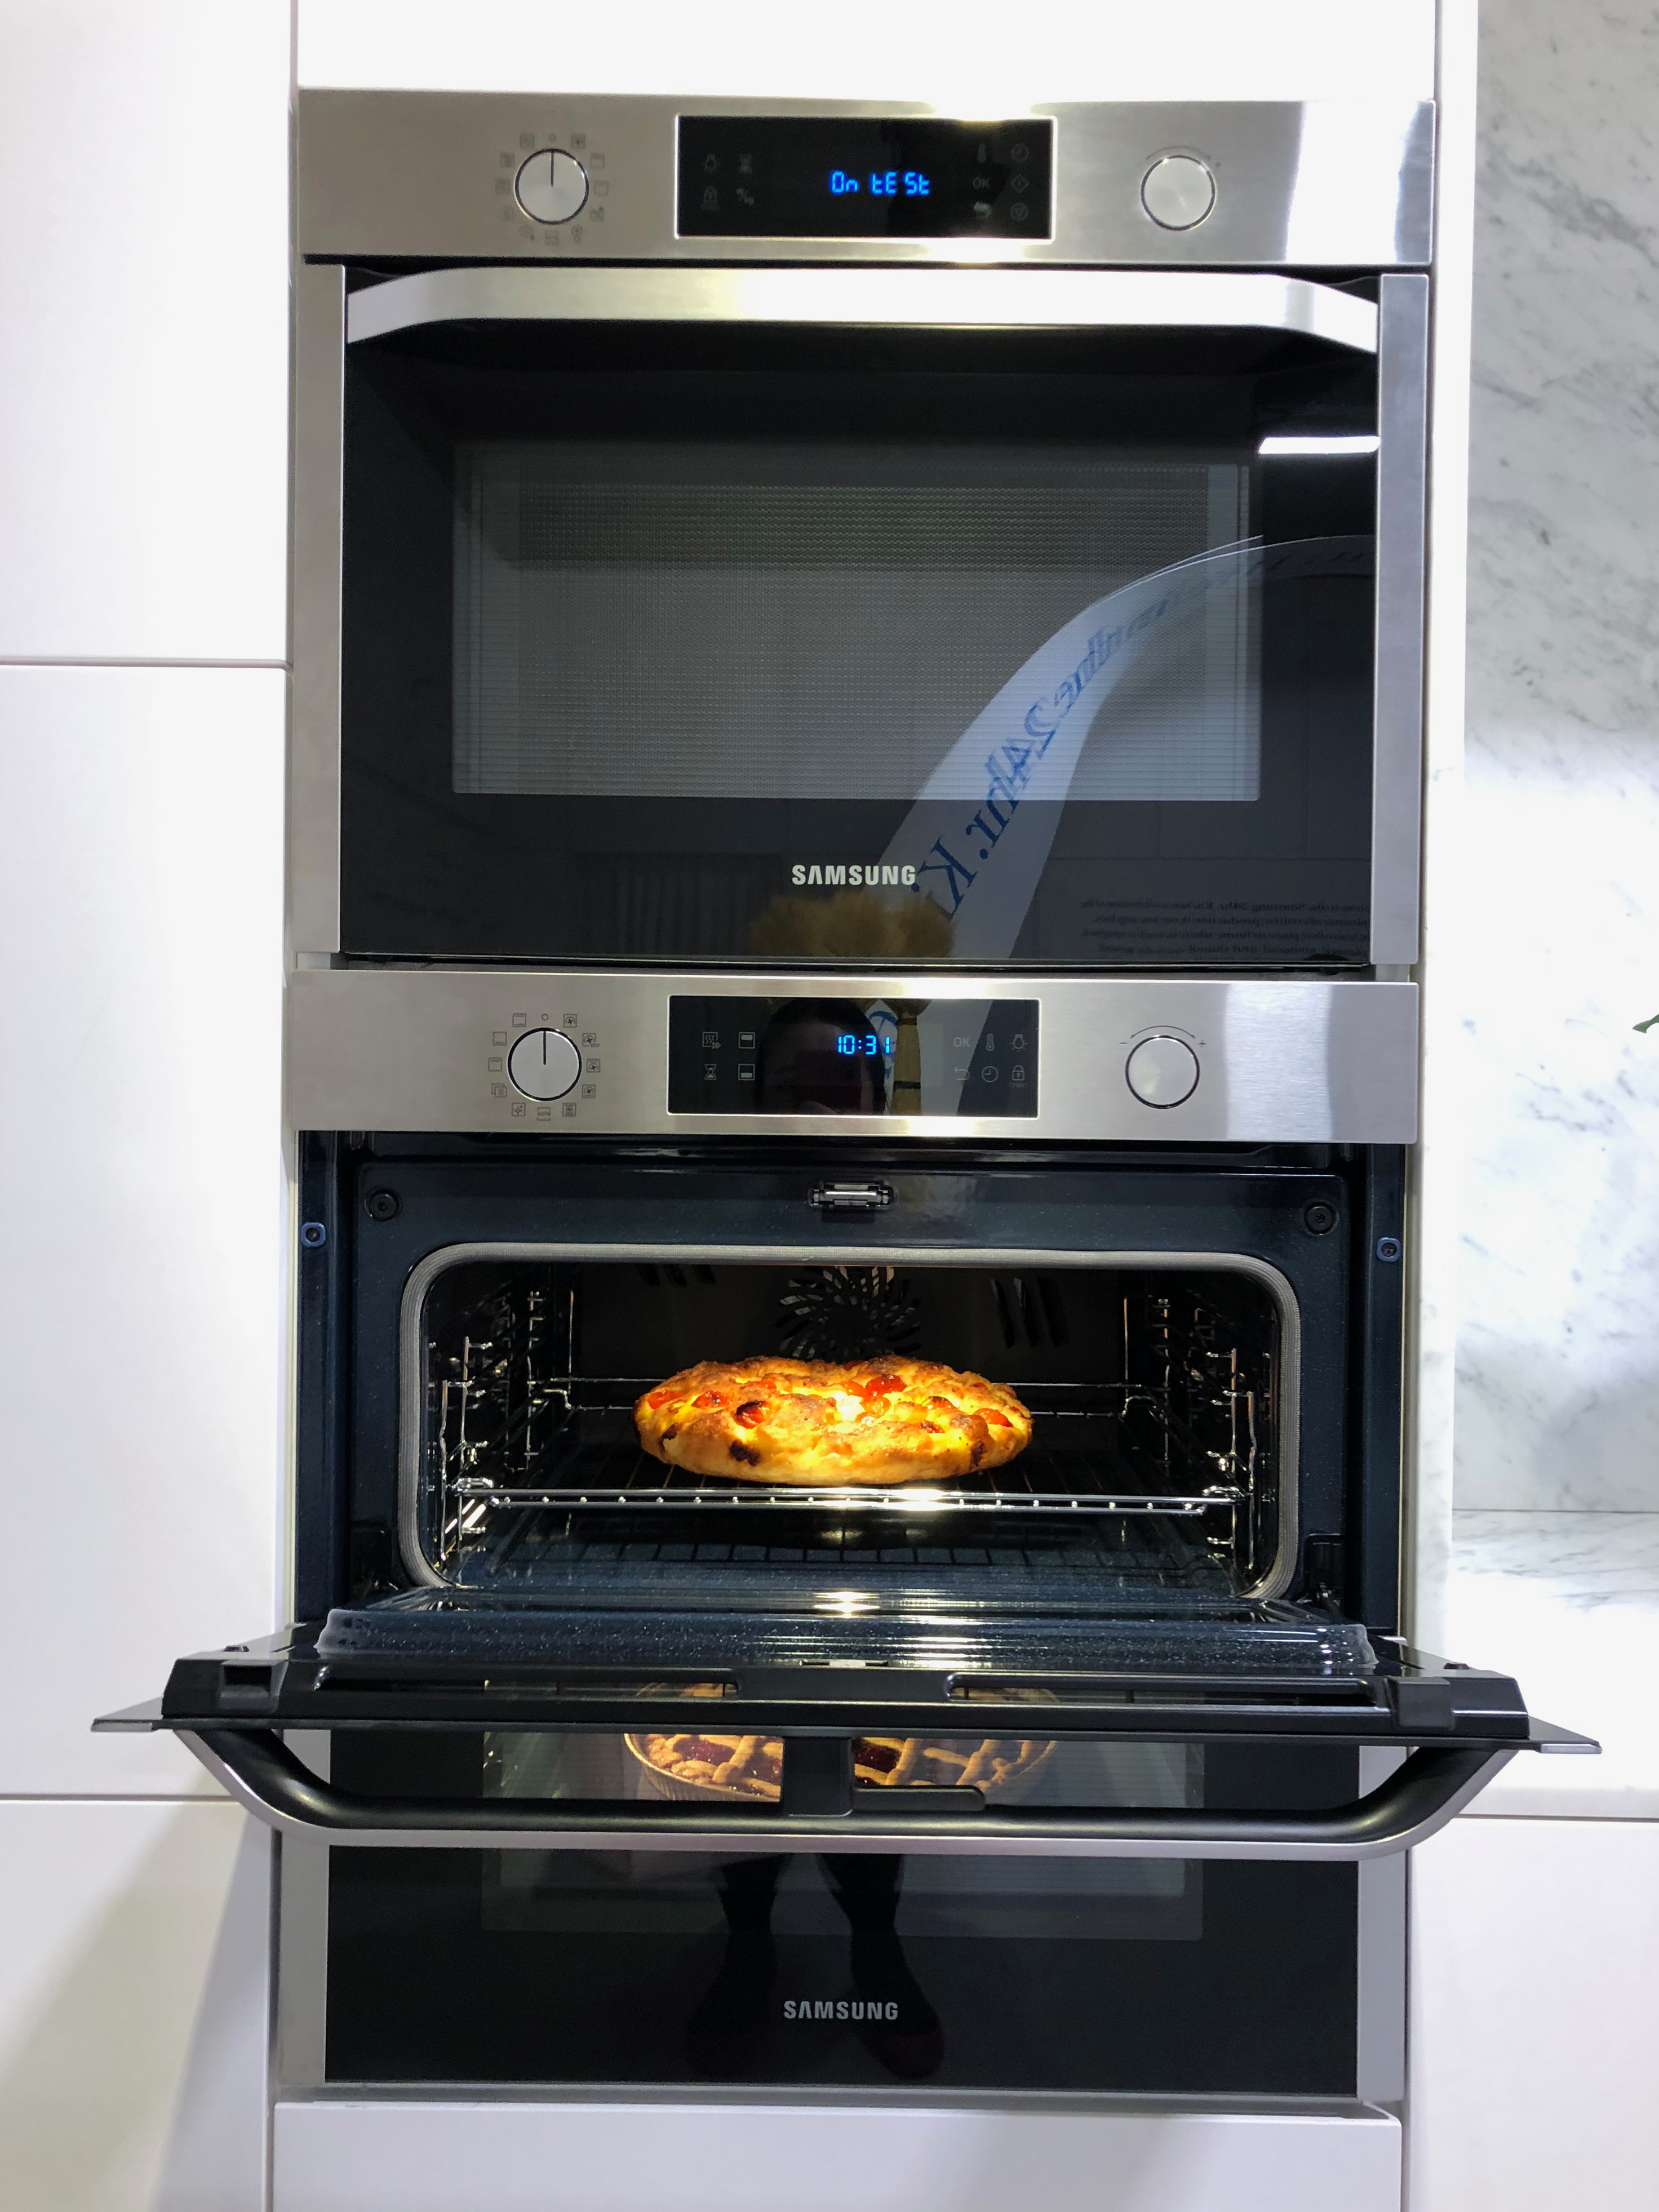 Samsung 24 hr kitchen Dual Cook Flex oven